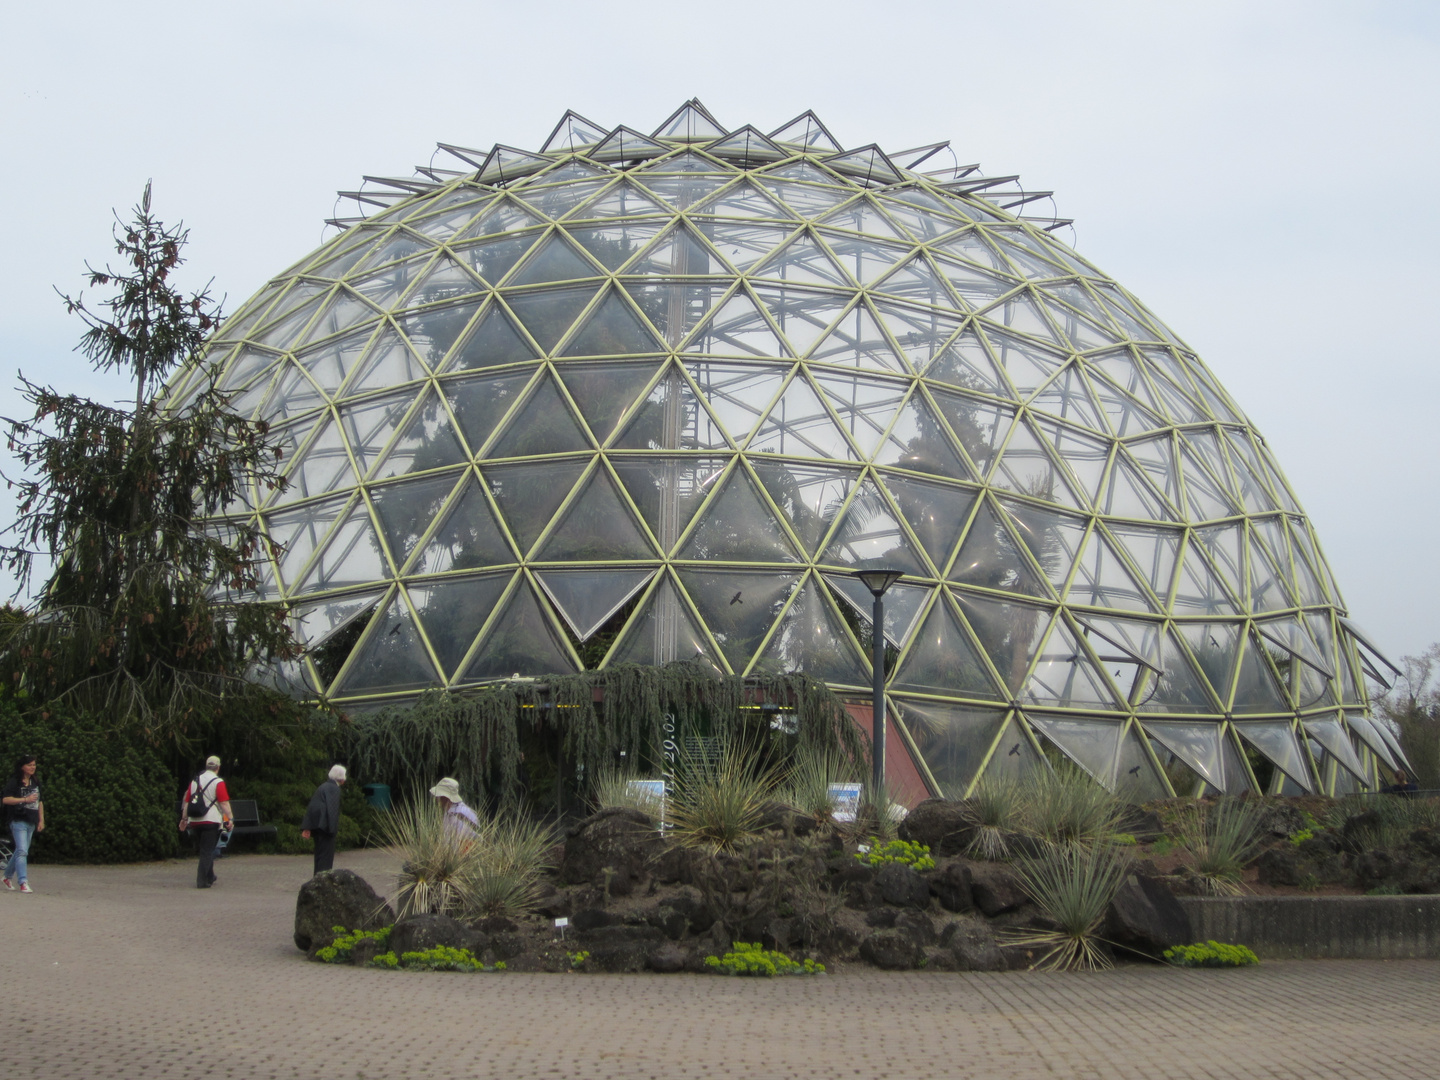 Botanischer Garten Düsseldorf